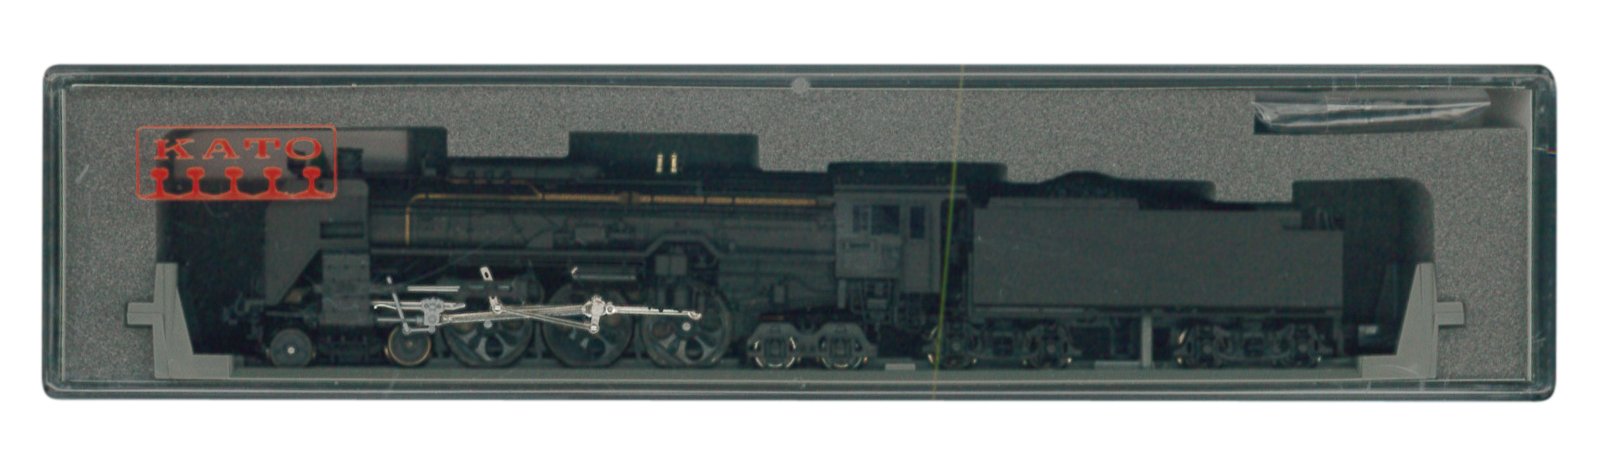 Kato Spur N 2017-1 Eisenbahnmodell Dampflokomotive C62 Hokkaido Typ